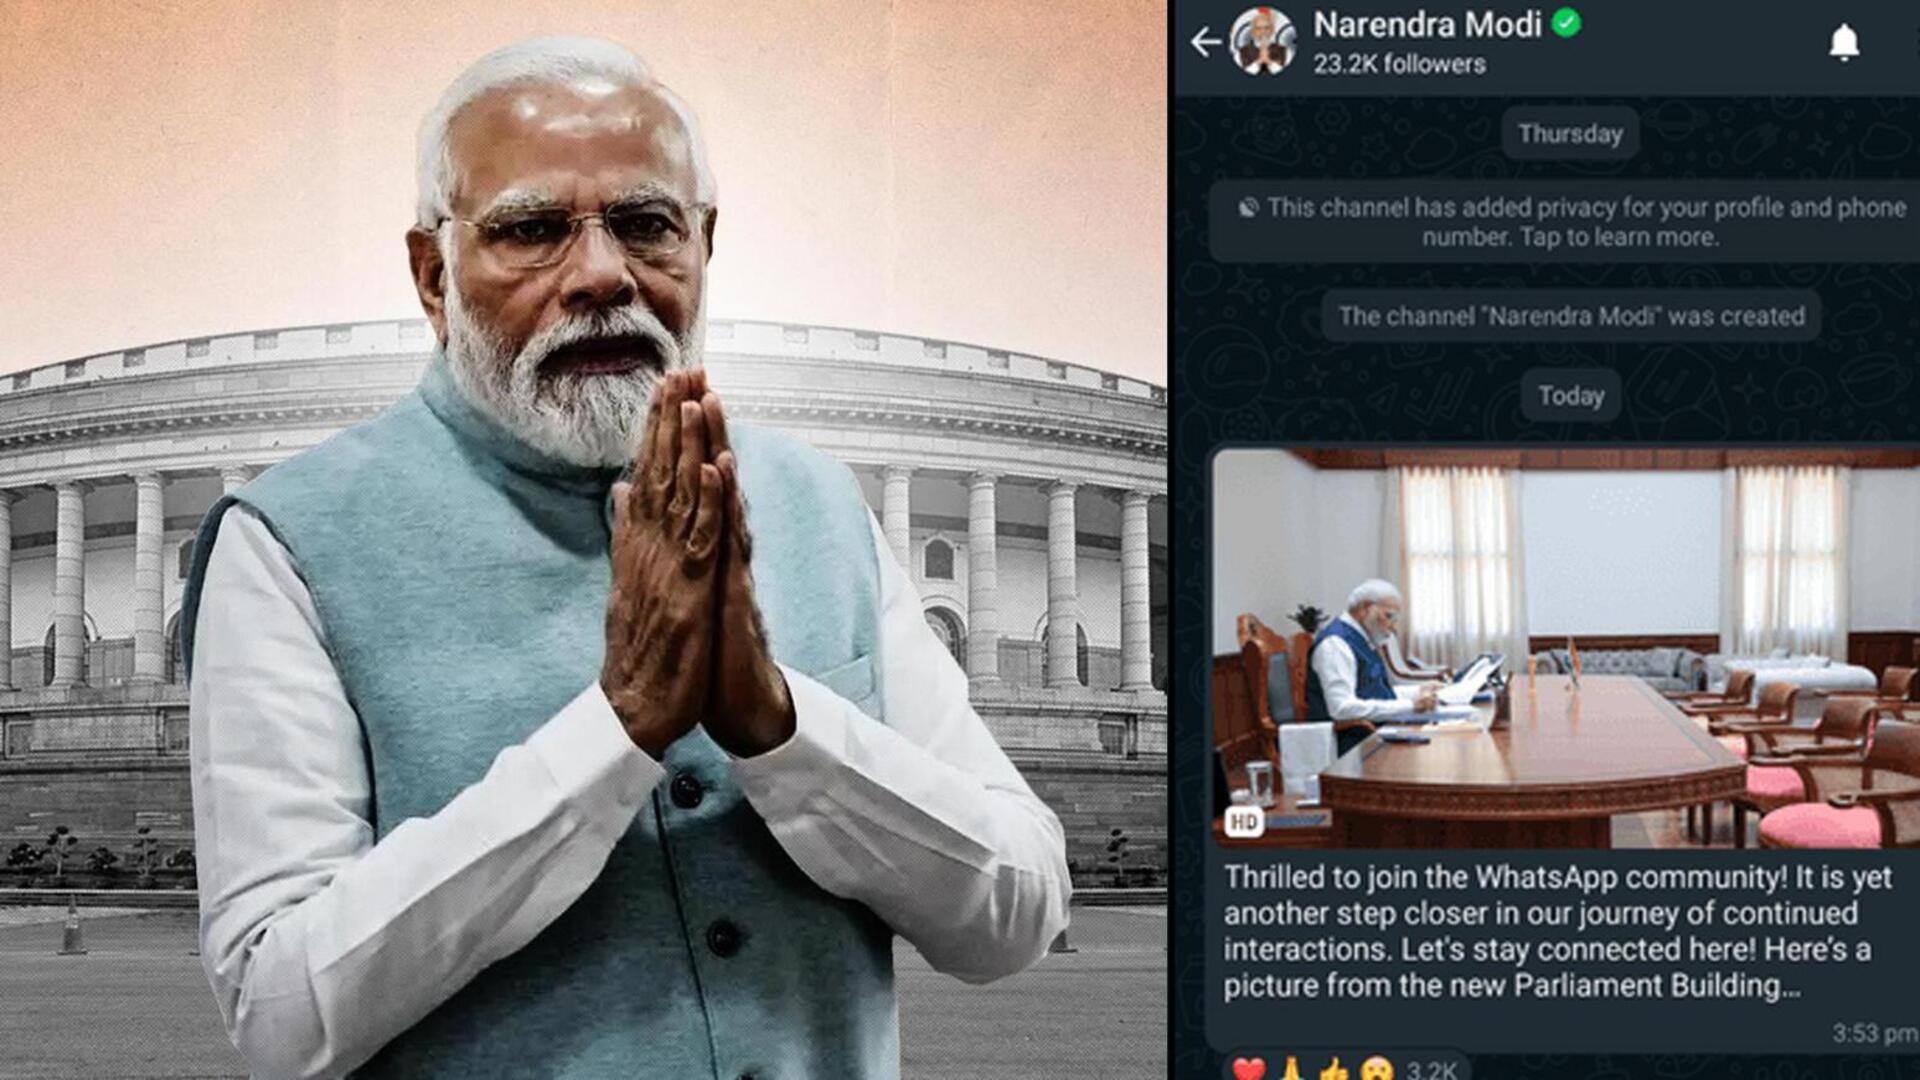 प्रधानमंत्री नरेंद्र मोदी व्हाट्सऐप पर आए, आप उनके चैनल से ऐसे जुड़ें 